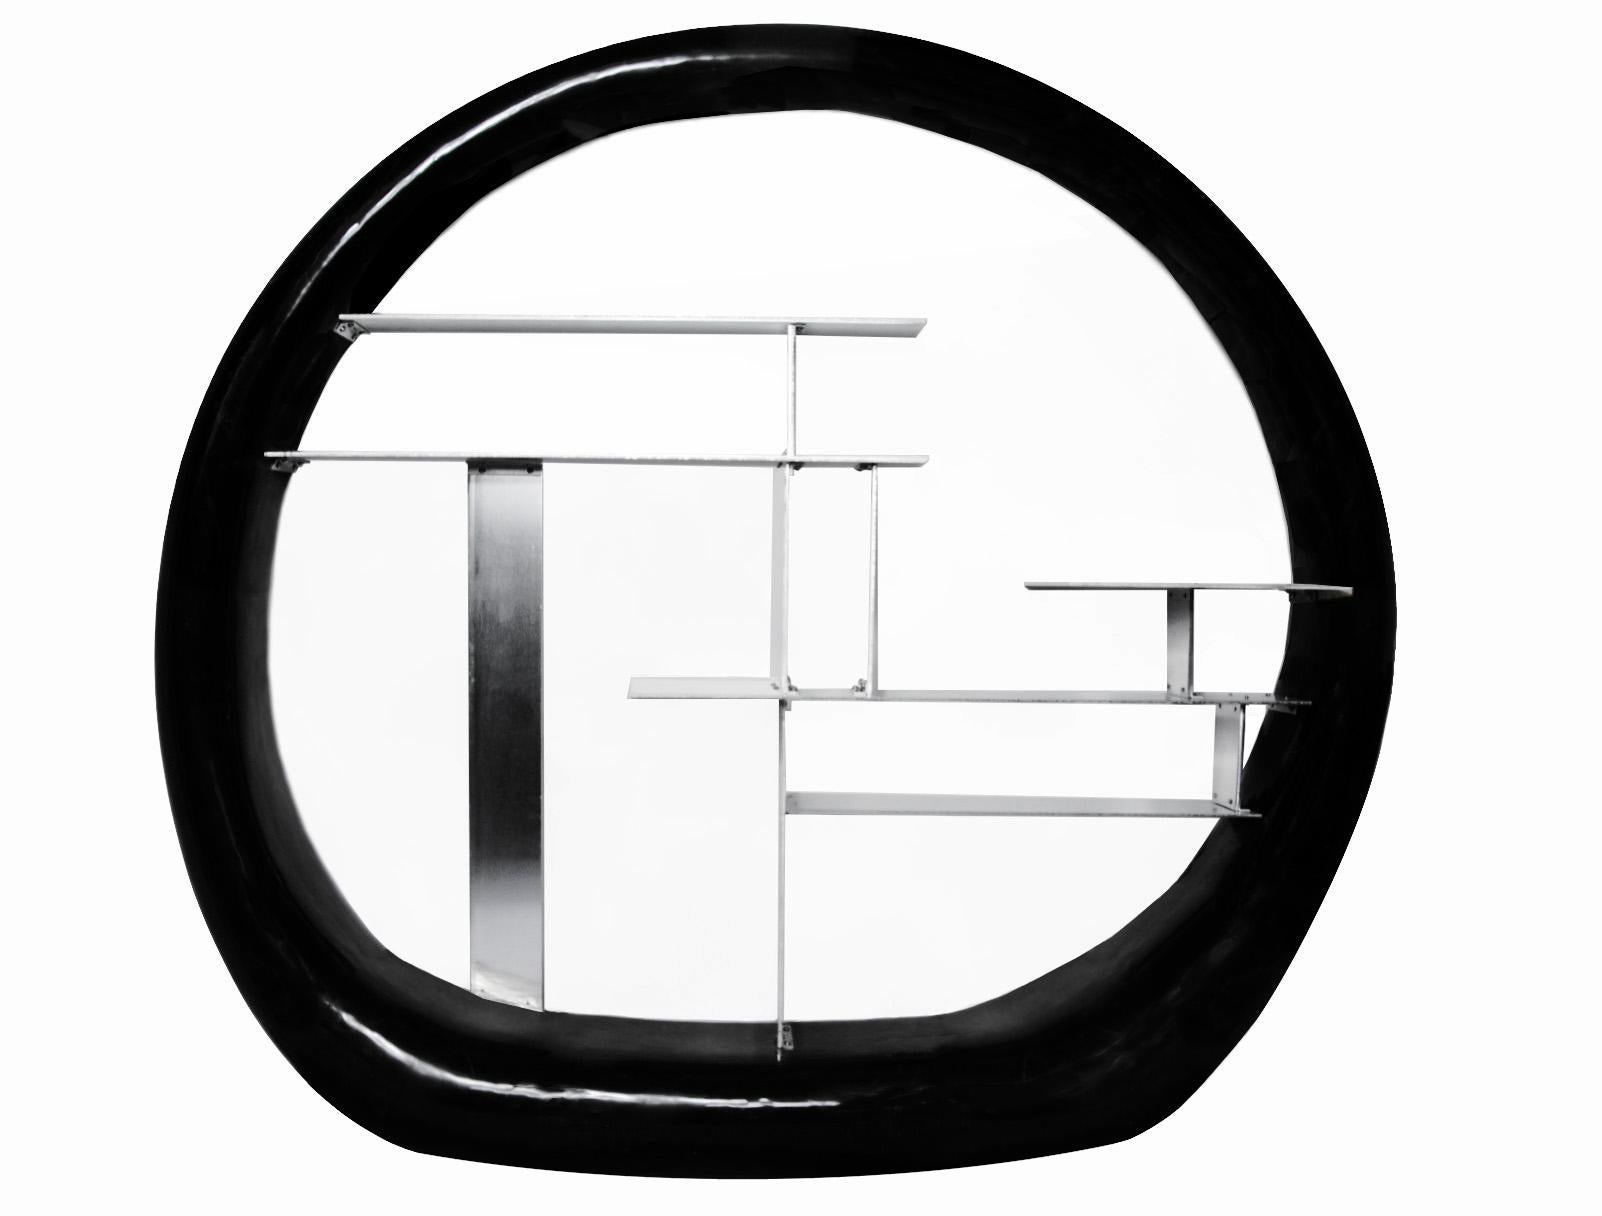 Ring Shelf ist ein freistehender, asymmetrischer Steinring, der an den modernistischen Bildhauer Isamu Noguchi erinnert, der verschiedenfarbige Steinsegmente zu größeren Strukturen zusammenfügte. Die Form- und Mustervariationen dieses Objekts sowie